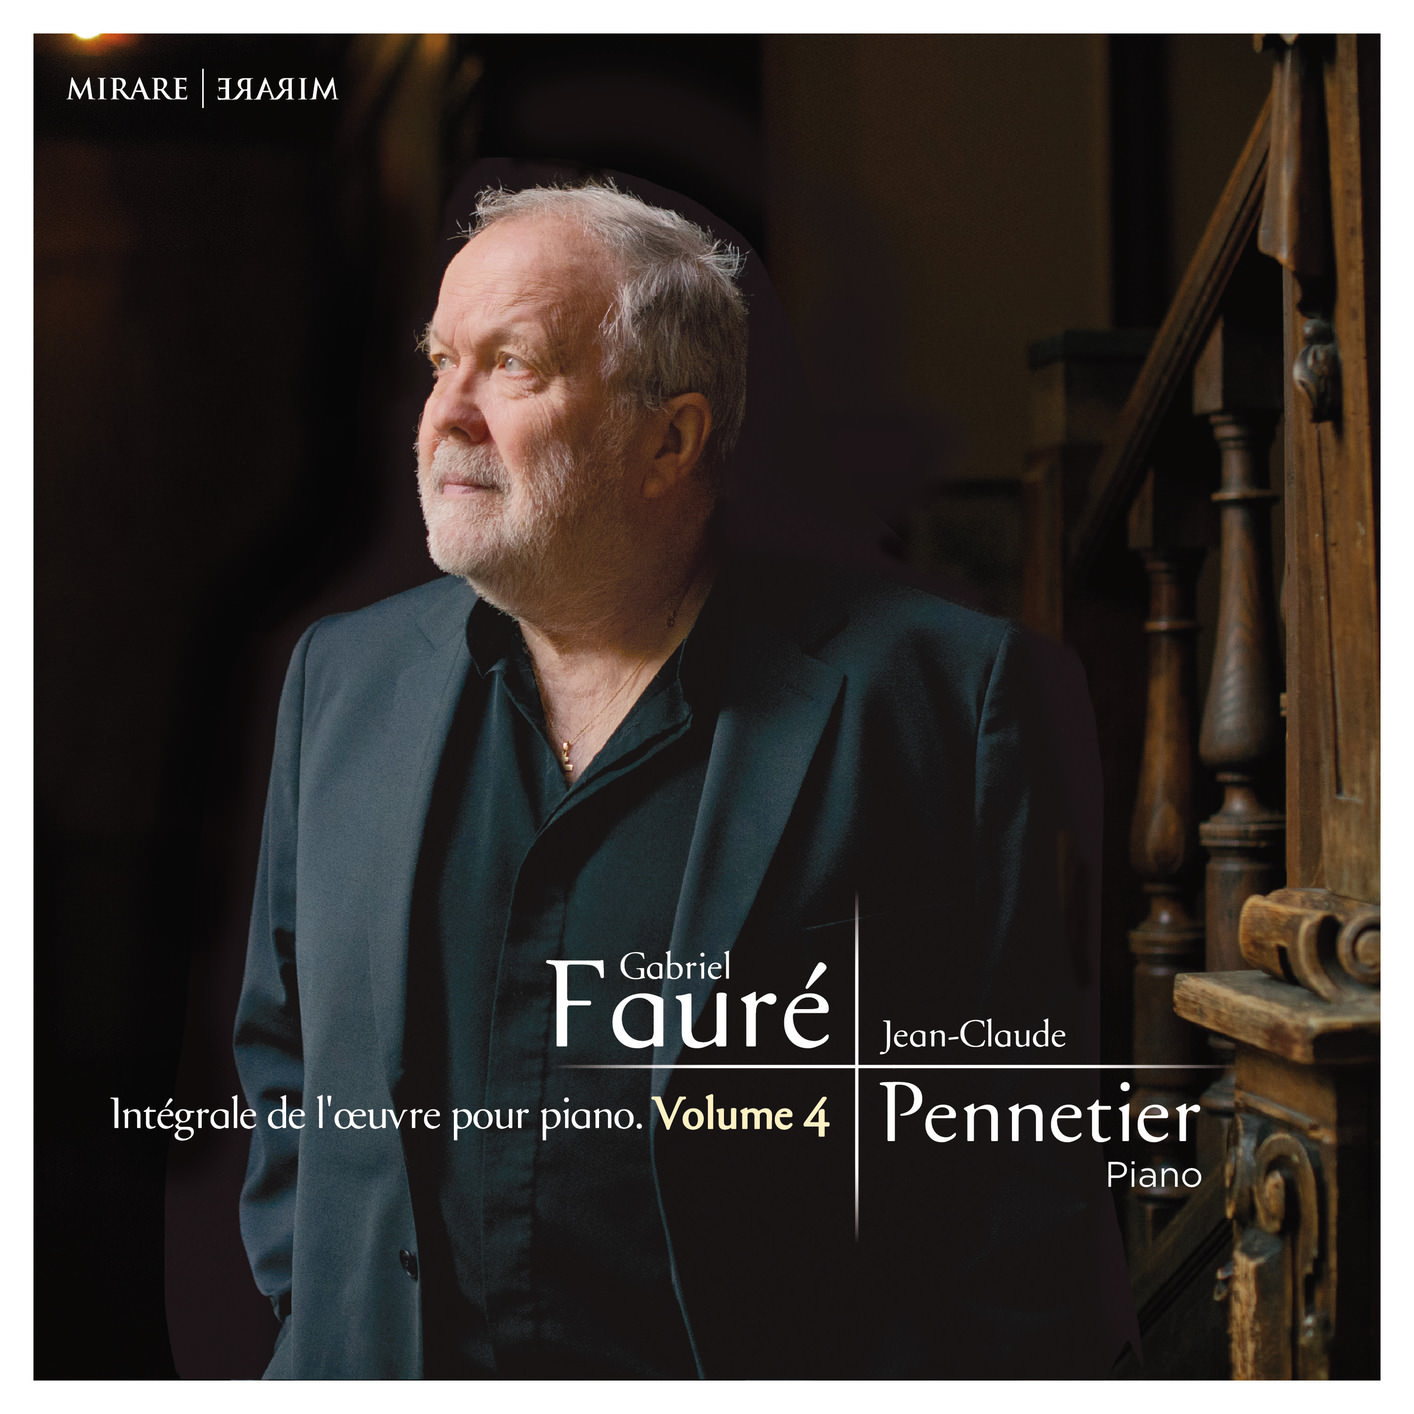 Jean-Claude Pennetier - Faure: Integrale de l’œuvre pour piano, Vol. 4 (2018) [FLAC 24bit/96kHz]